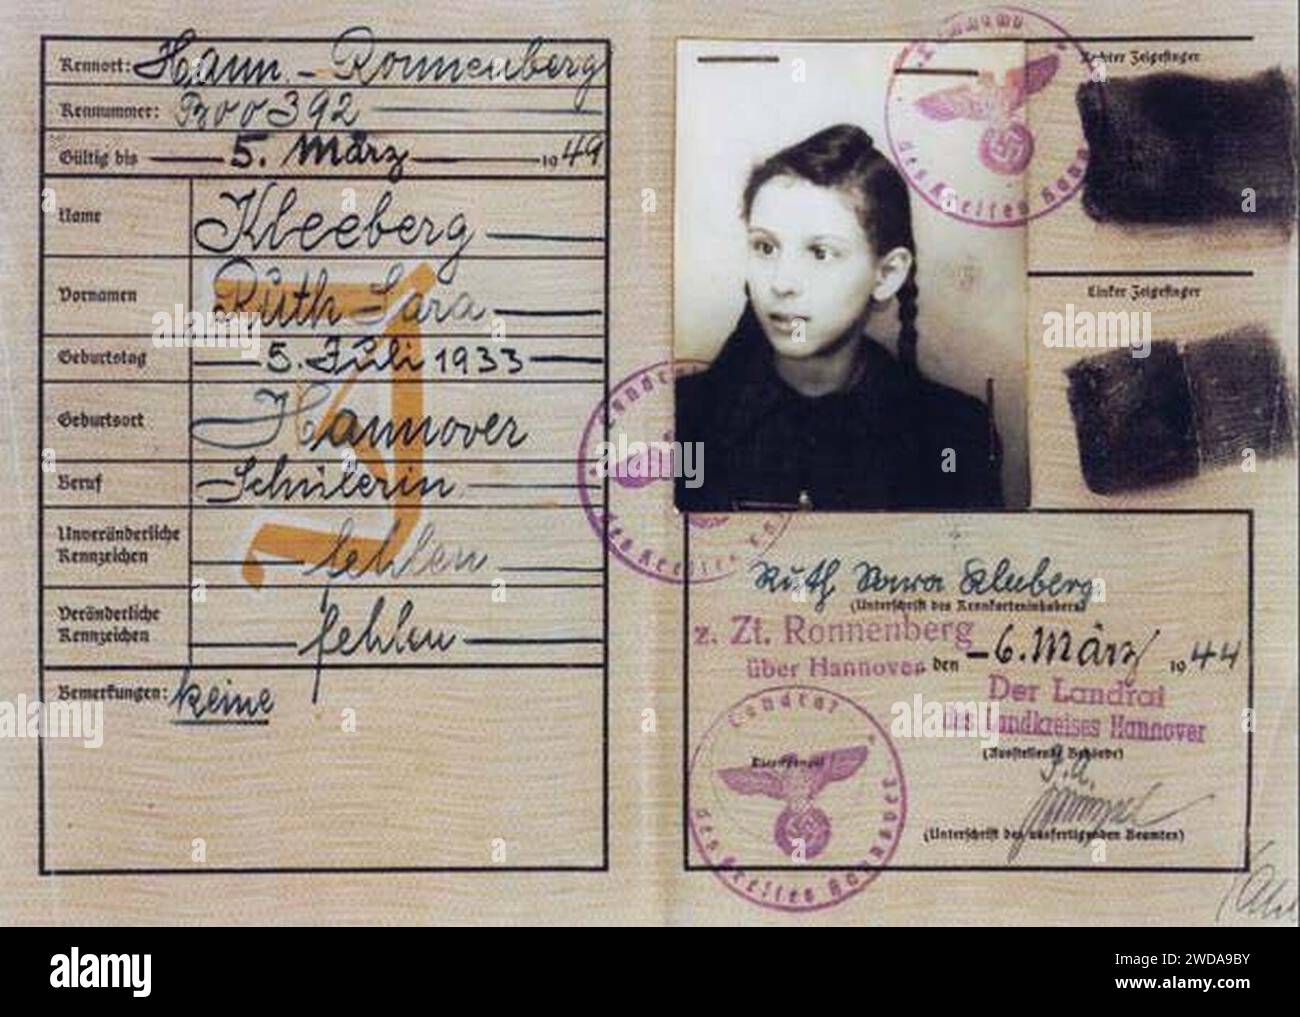 1944-03-06 Personalausweis der Schülerin Ruth Sara Kleeberg in Ronnenberg, ausgestellt vom Landrat des Landkreises Hannover. Banque D'Images